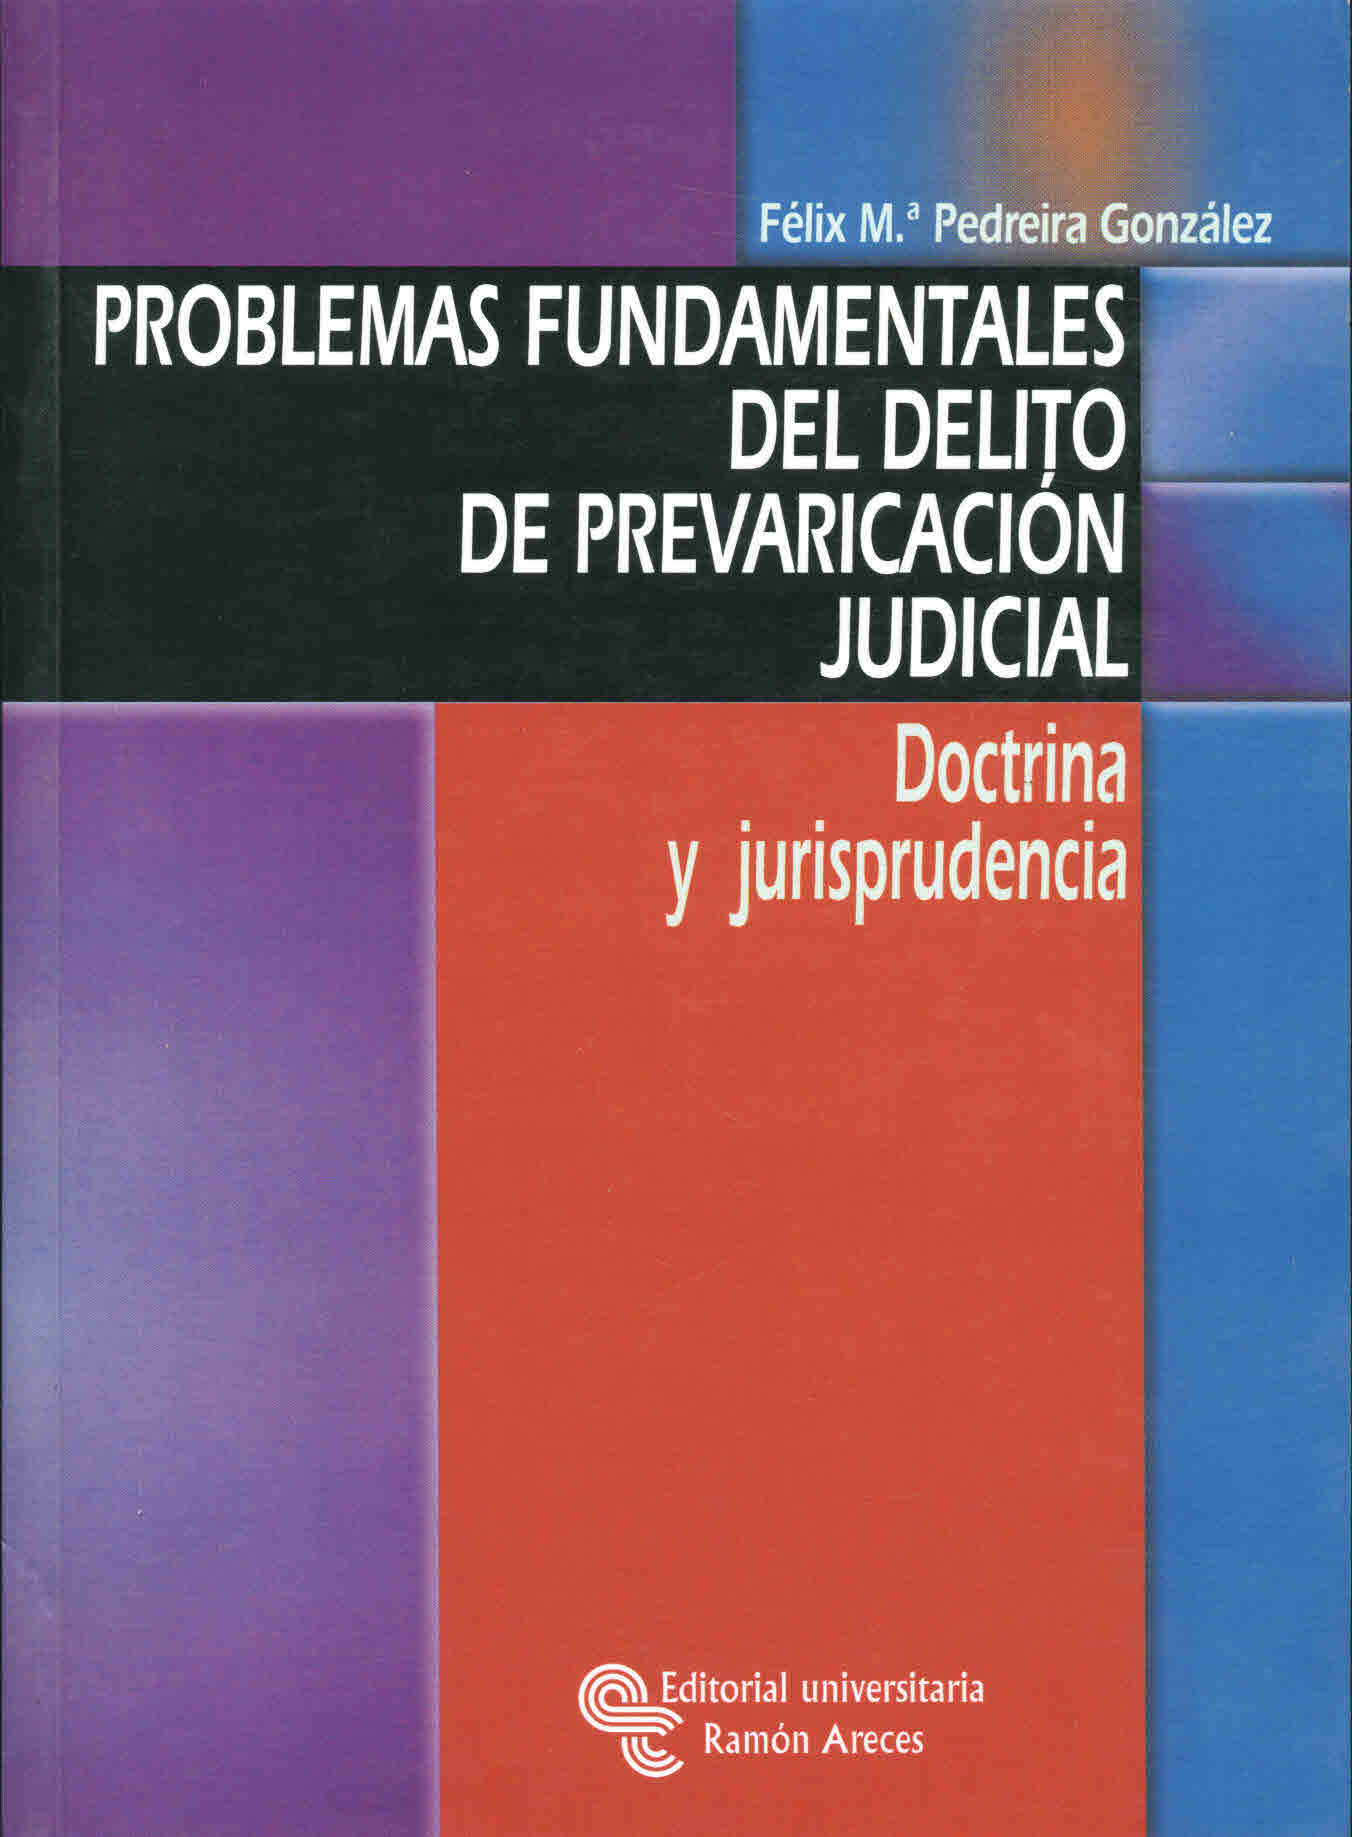 Problemas fundamentales del delito de prevaricación judicial. Doctrina y jurisprudencia